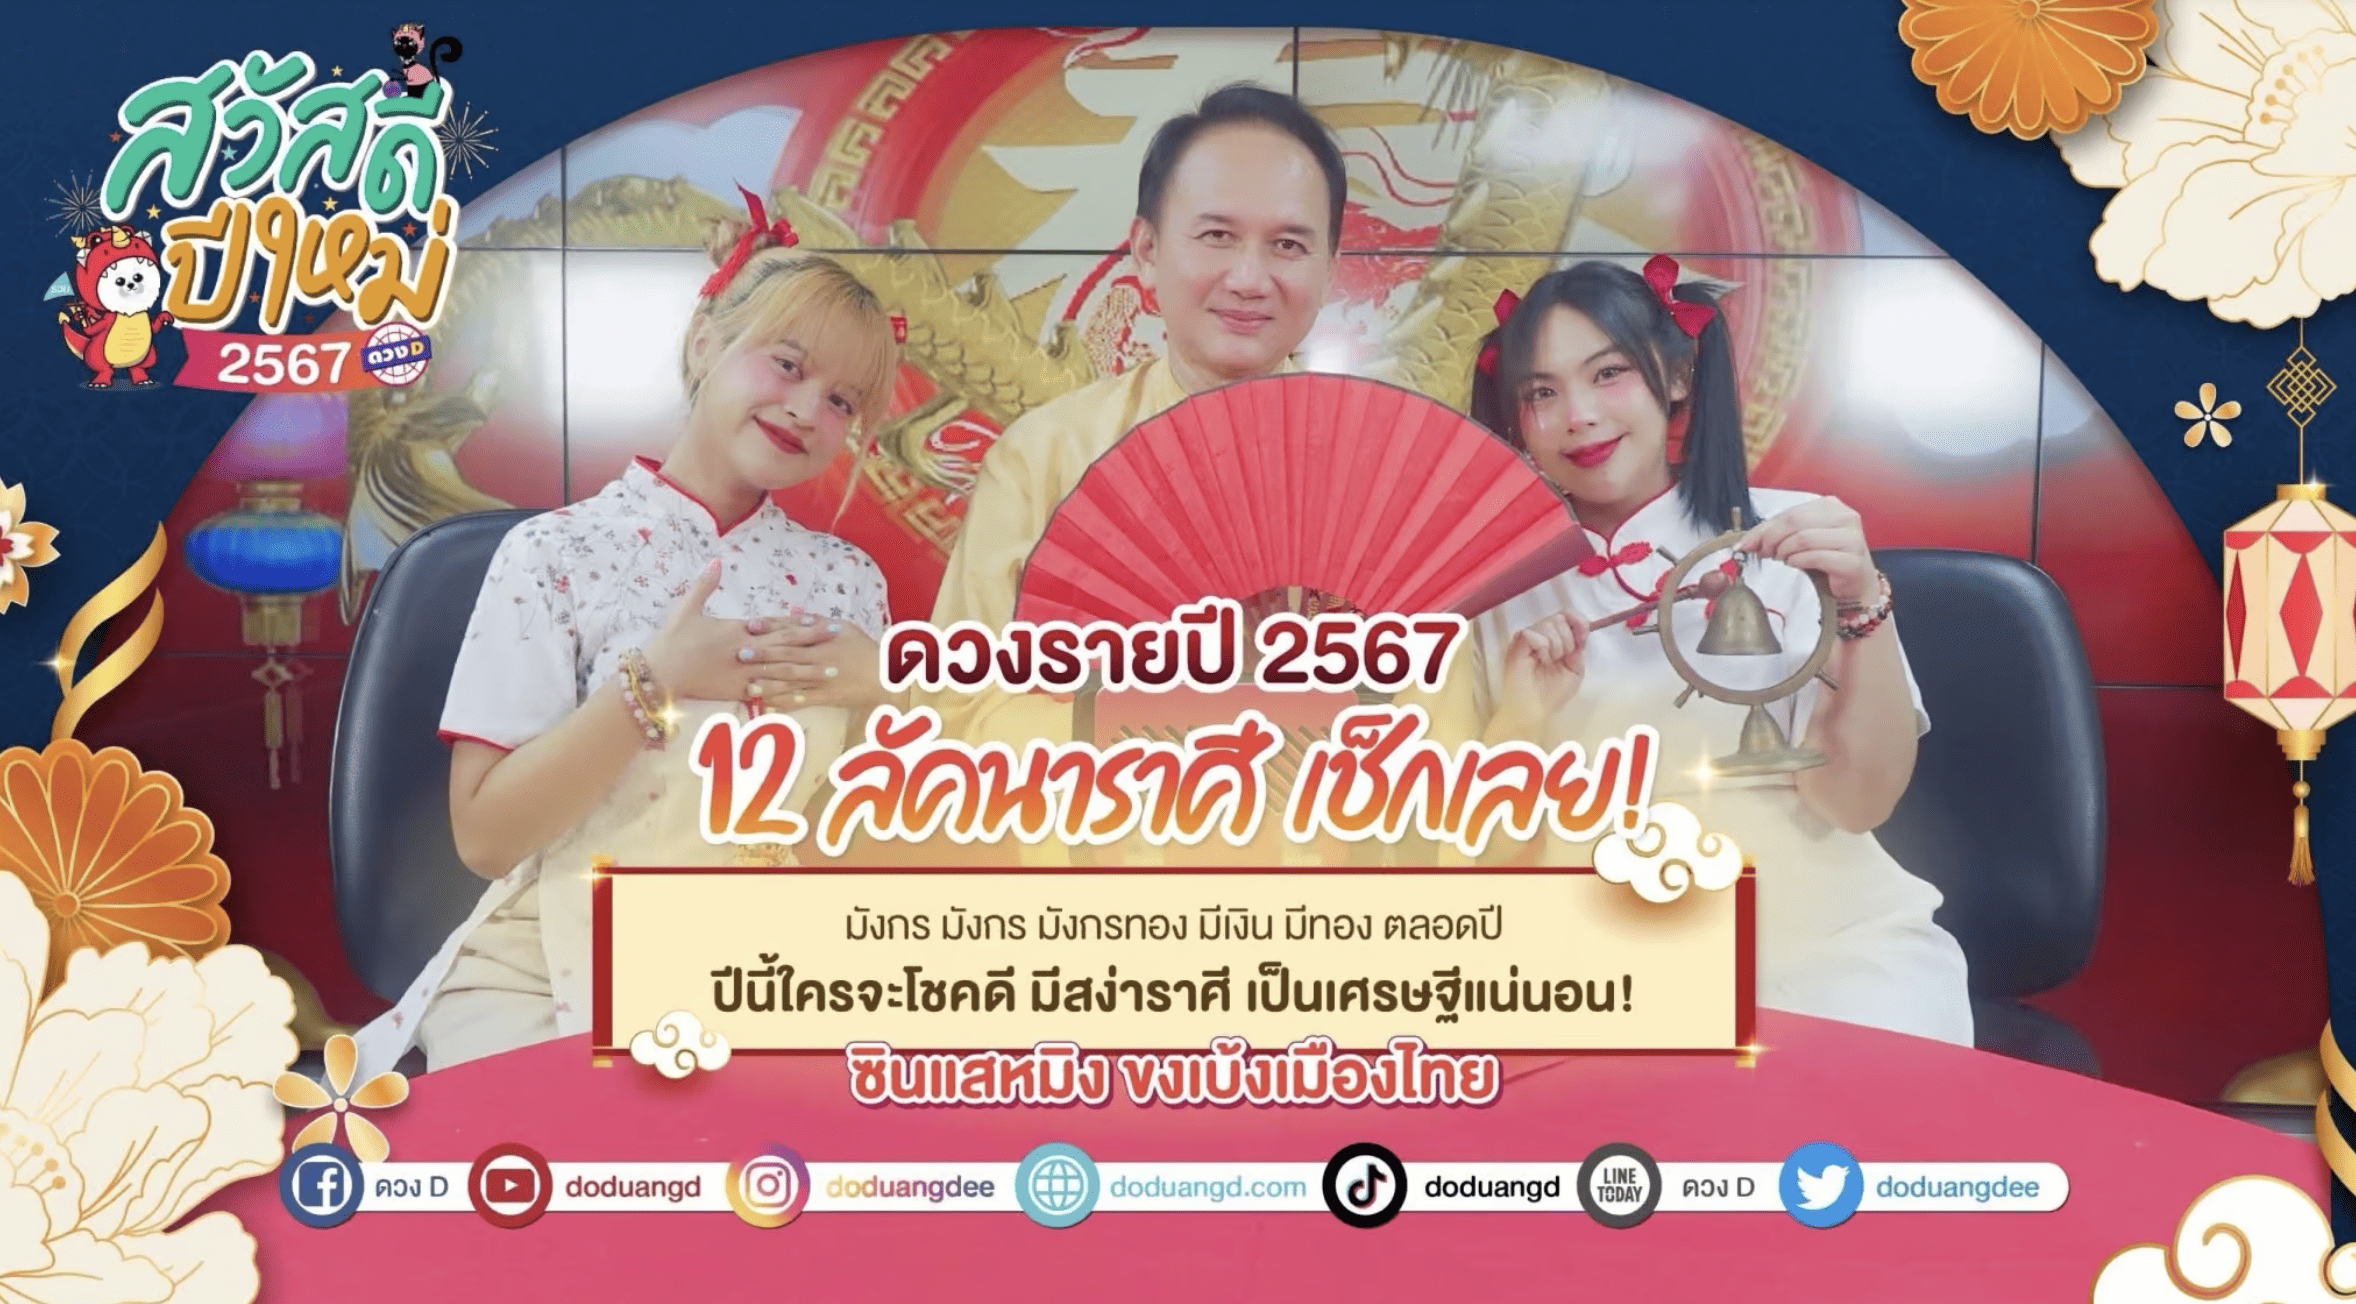 ละเอียดที่สุด! ดวง 12 ลัคนาราศี เดือนกันยายน 2566 ซินแสหมิง ขงเบ้งเมืองไทย